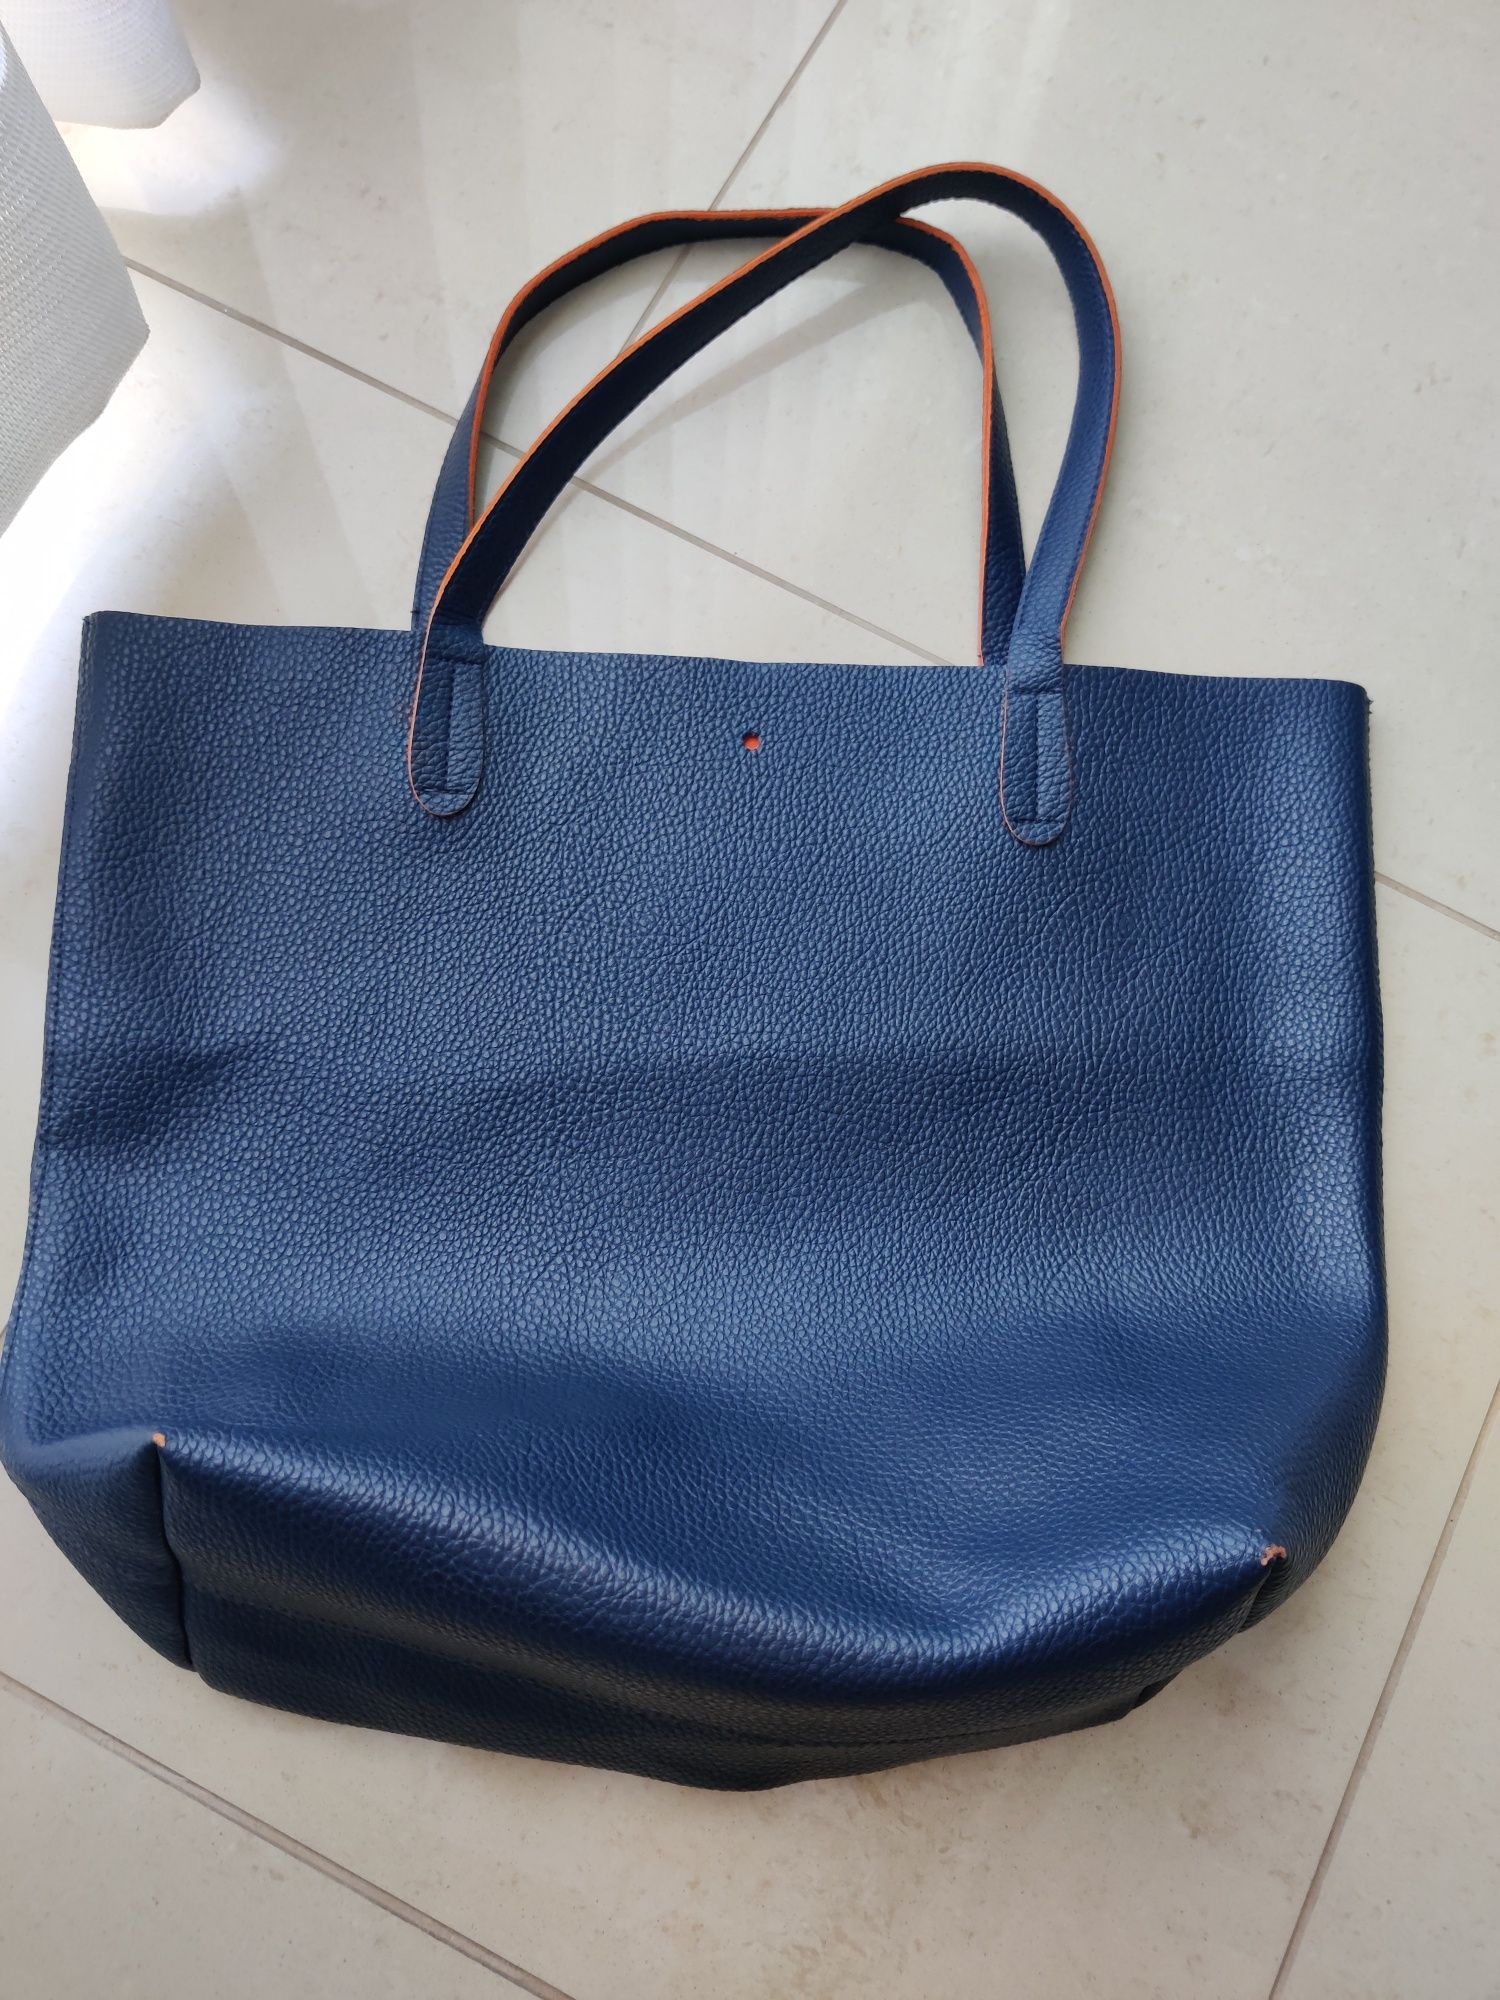 Mala / saco azul